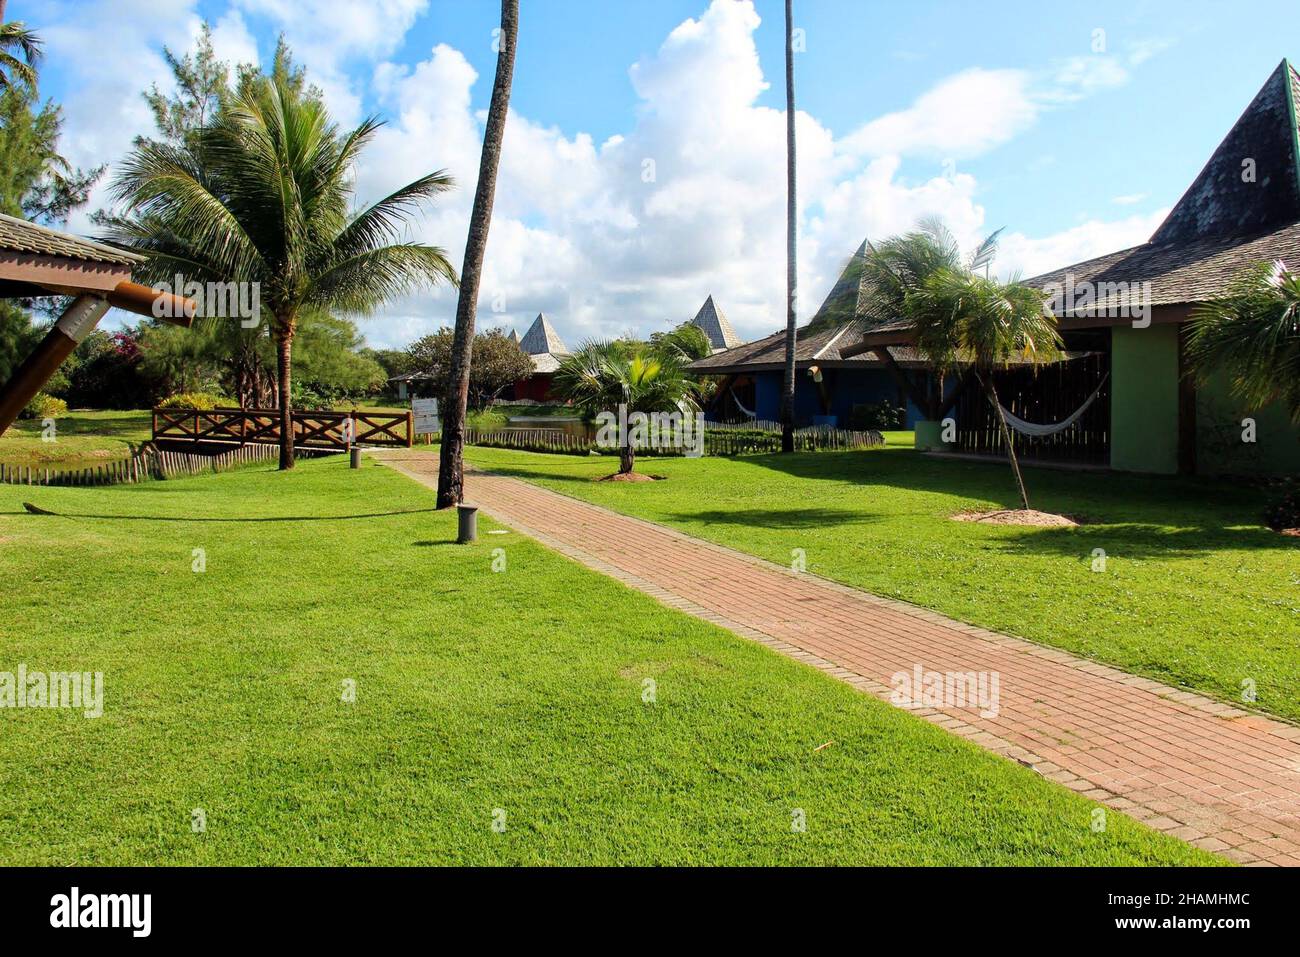 Vila Galé Resort: Garten und individuelle Chalets im Resort im Nordosten Brasiliens - Camaçari- Bahia - Brasilien Stockfoto